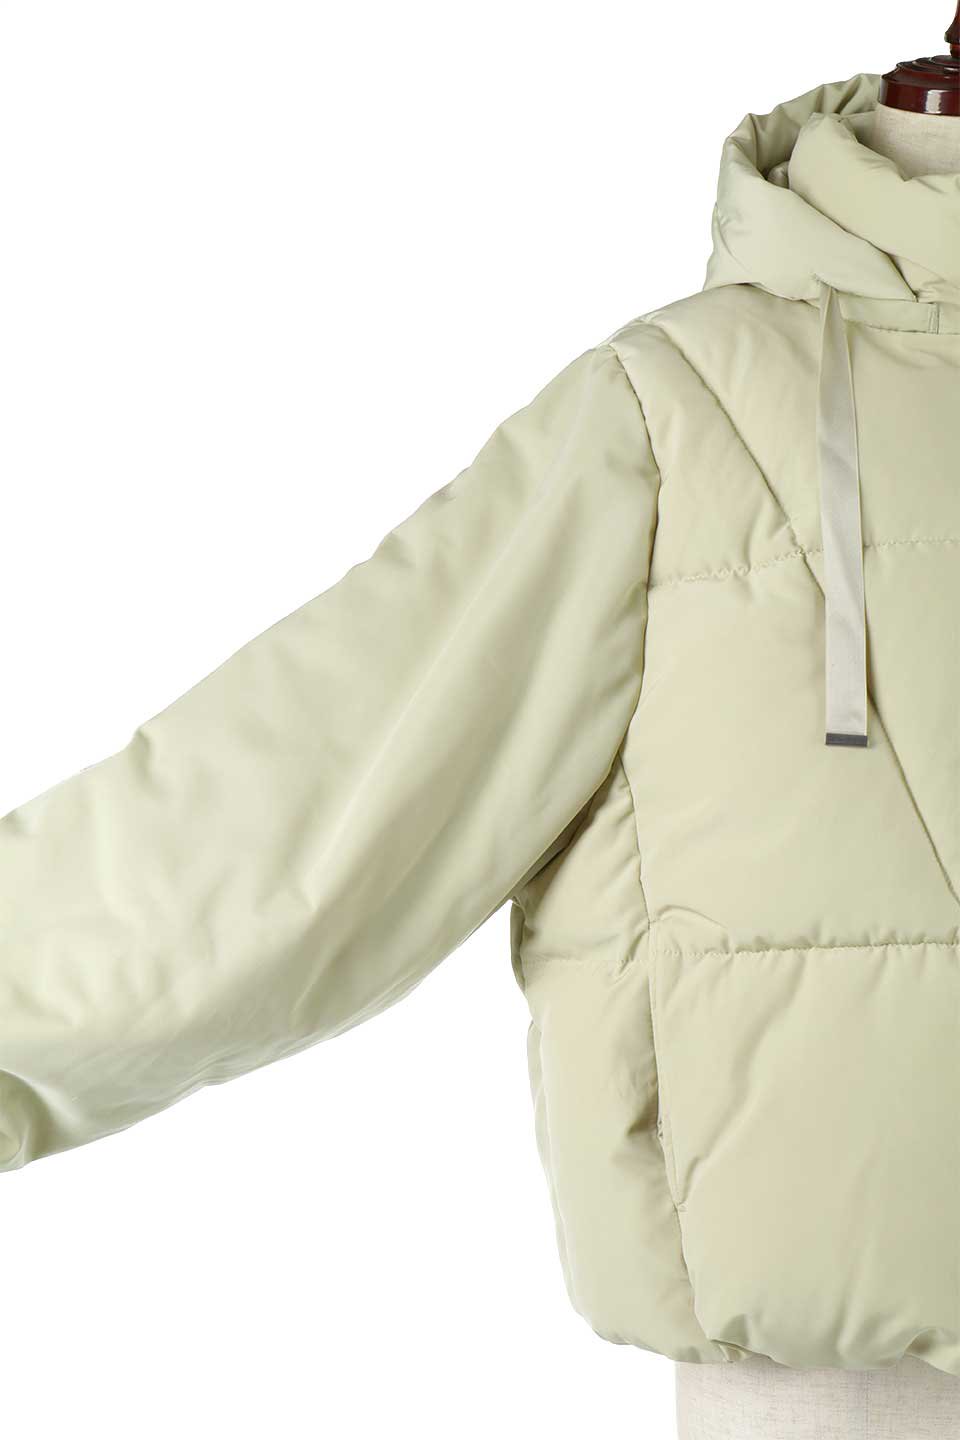 SORONAShortPufferJacketソロナ中綿・ショートジャケット大人カジュアルに最適な海外ファッションのothers（その他インポートアイテム）のアウターやジャケット。ボリューミーだけど着ぶくれしない。デュポン社の新素材を使用した中綿ジャケット。/main-21